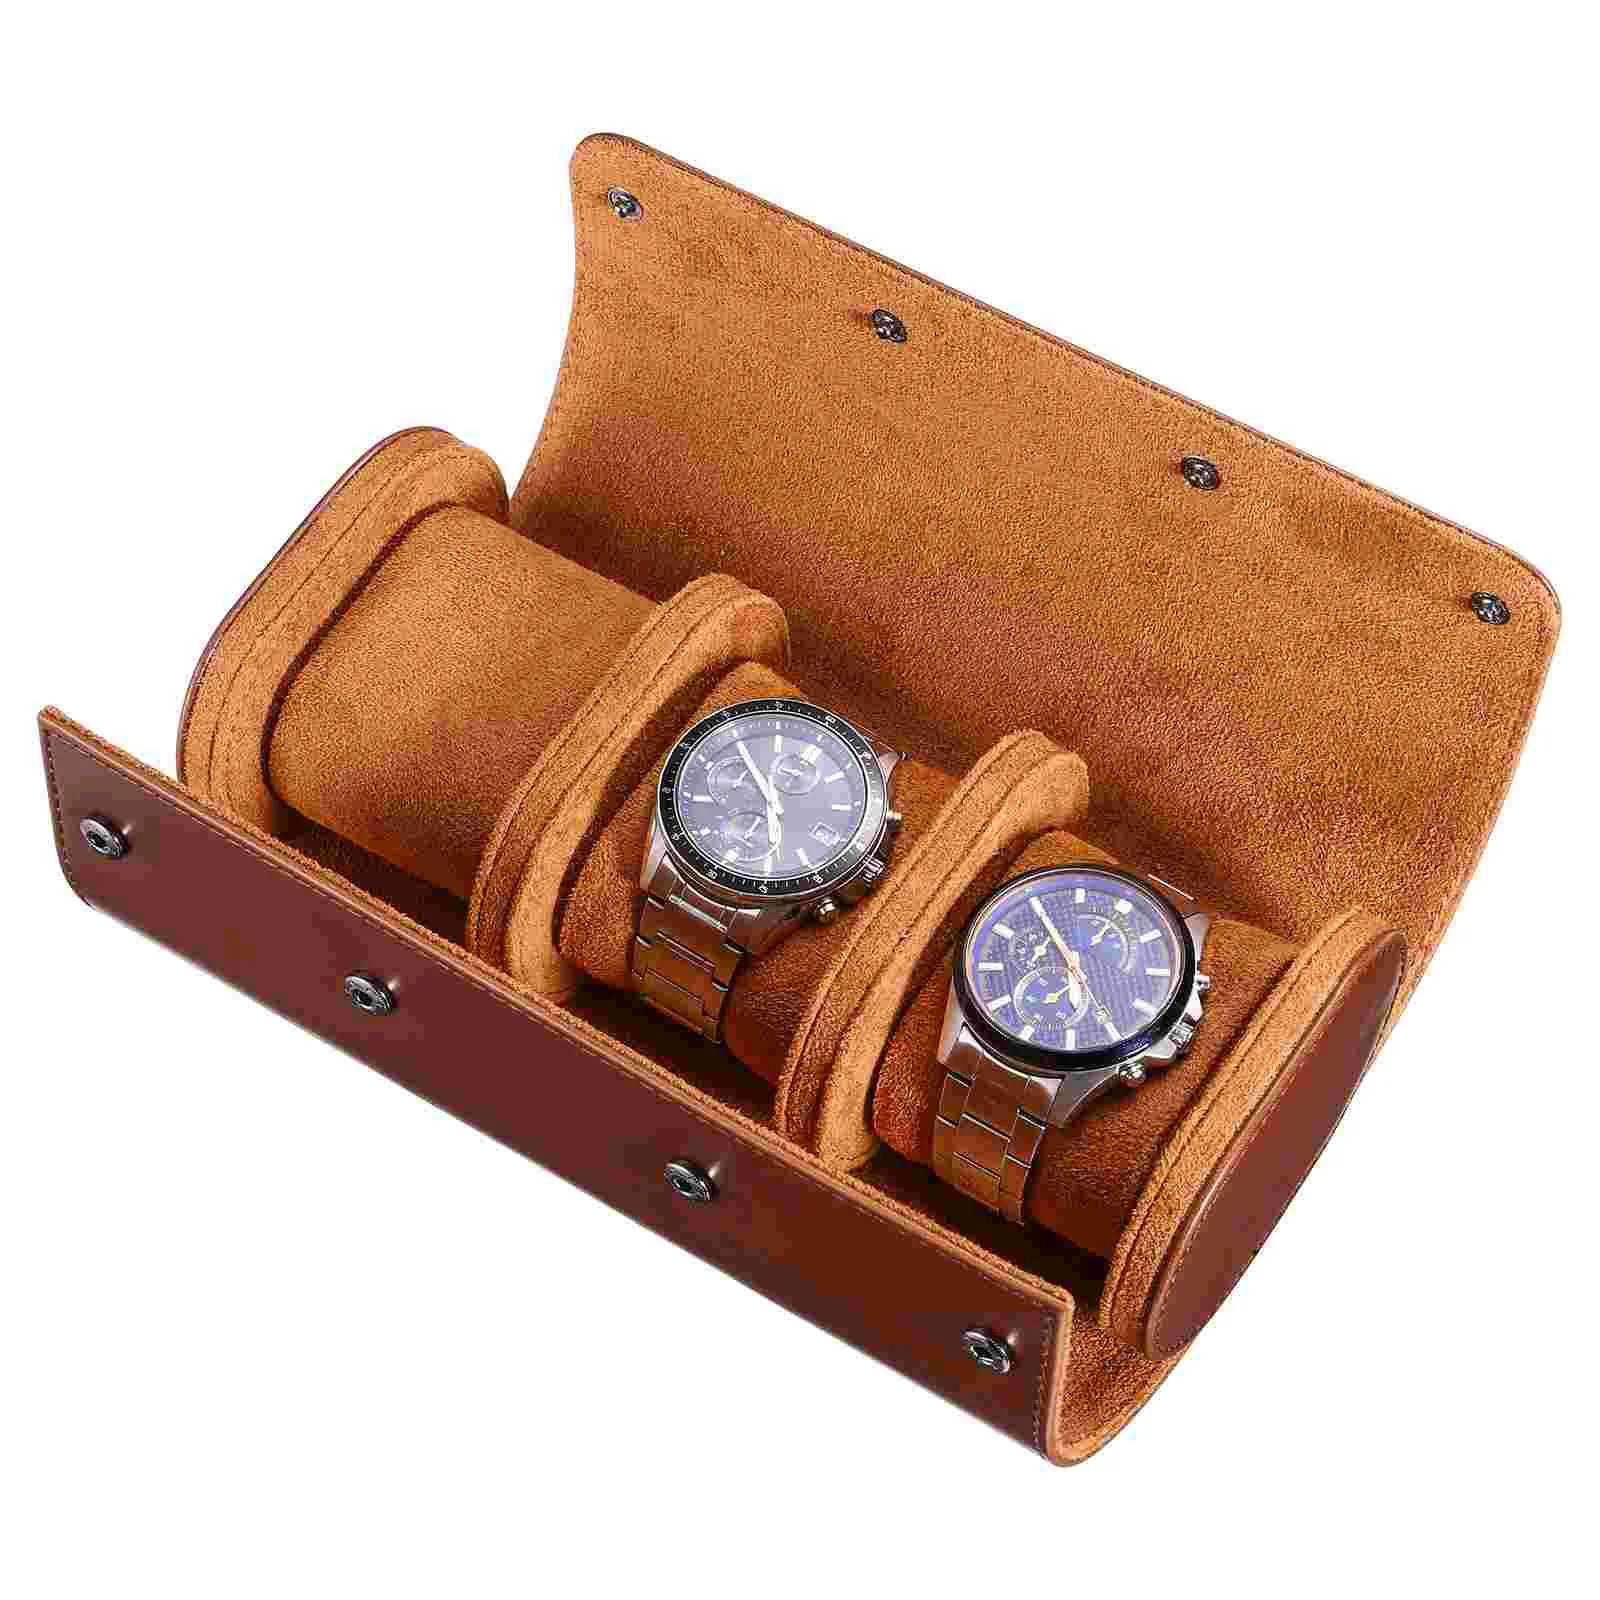 

Hemobllo 3 Slots Watch Case Watch Roll Travel Box PU Watch Storage Organizer (Brown) Cases